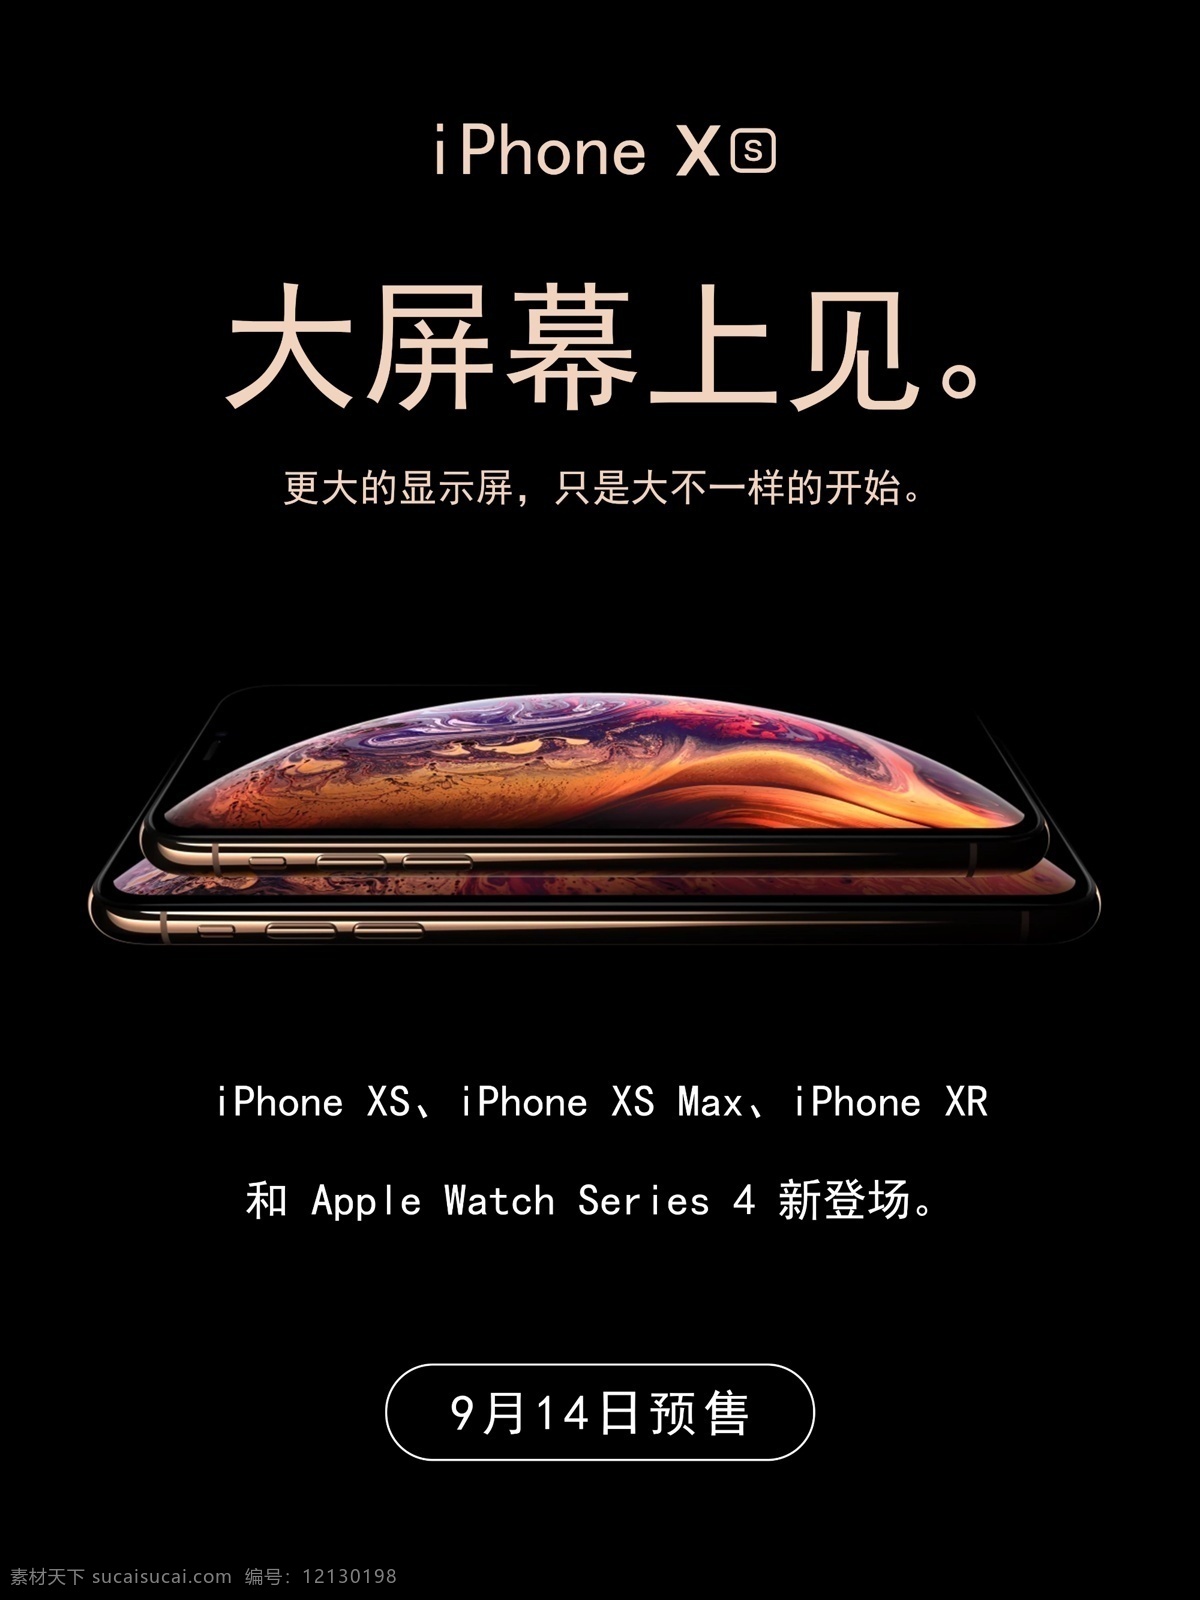 黑色 大气 iphonexs 苹果 新品 促销 海报 促销海报 苹果手机海报 苹果手机 iphone 苹果海报 黑色大气 苹果新品 xs 苹果手机广告 手机